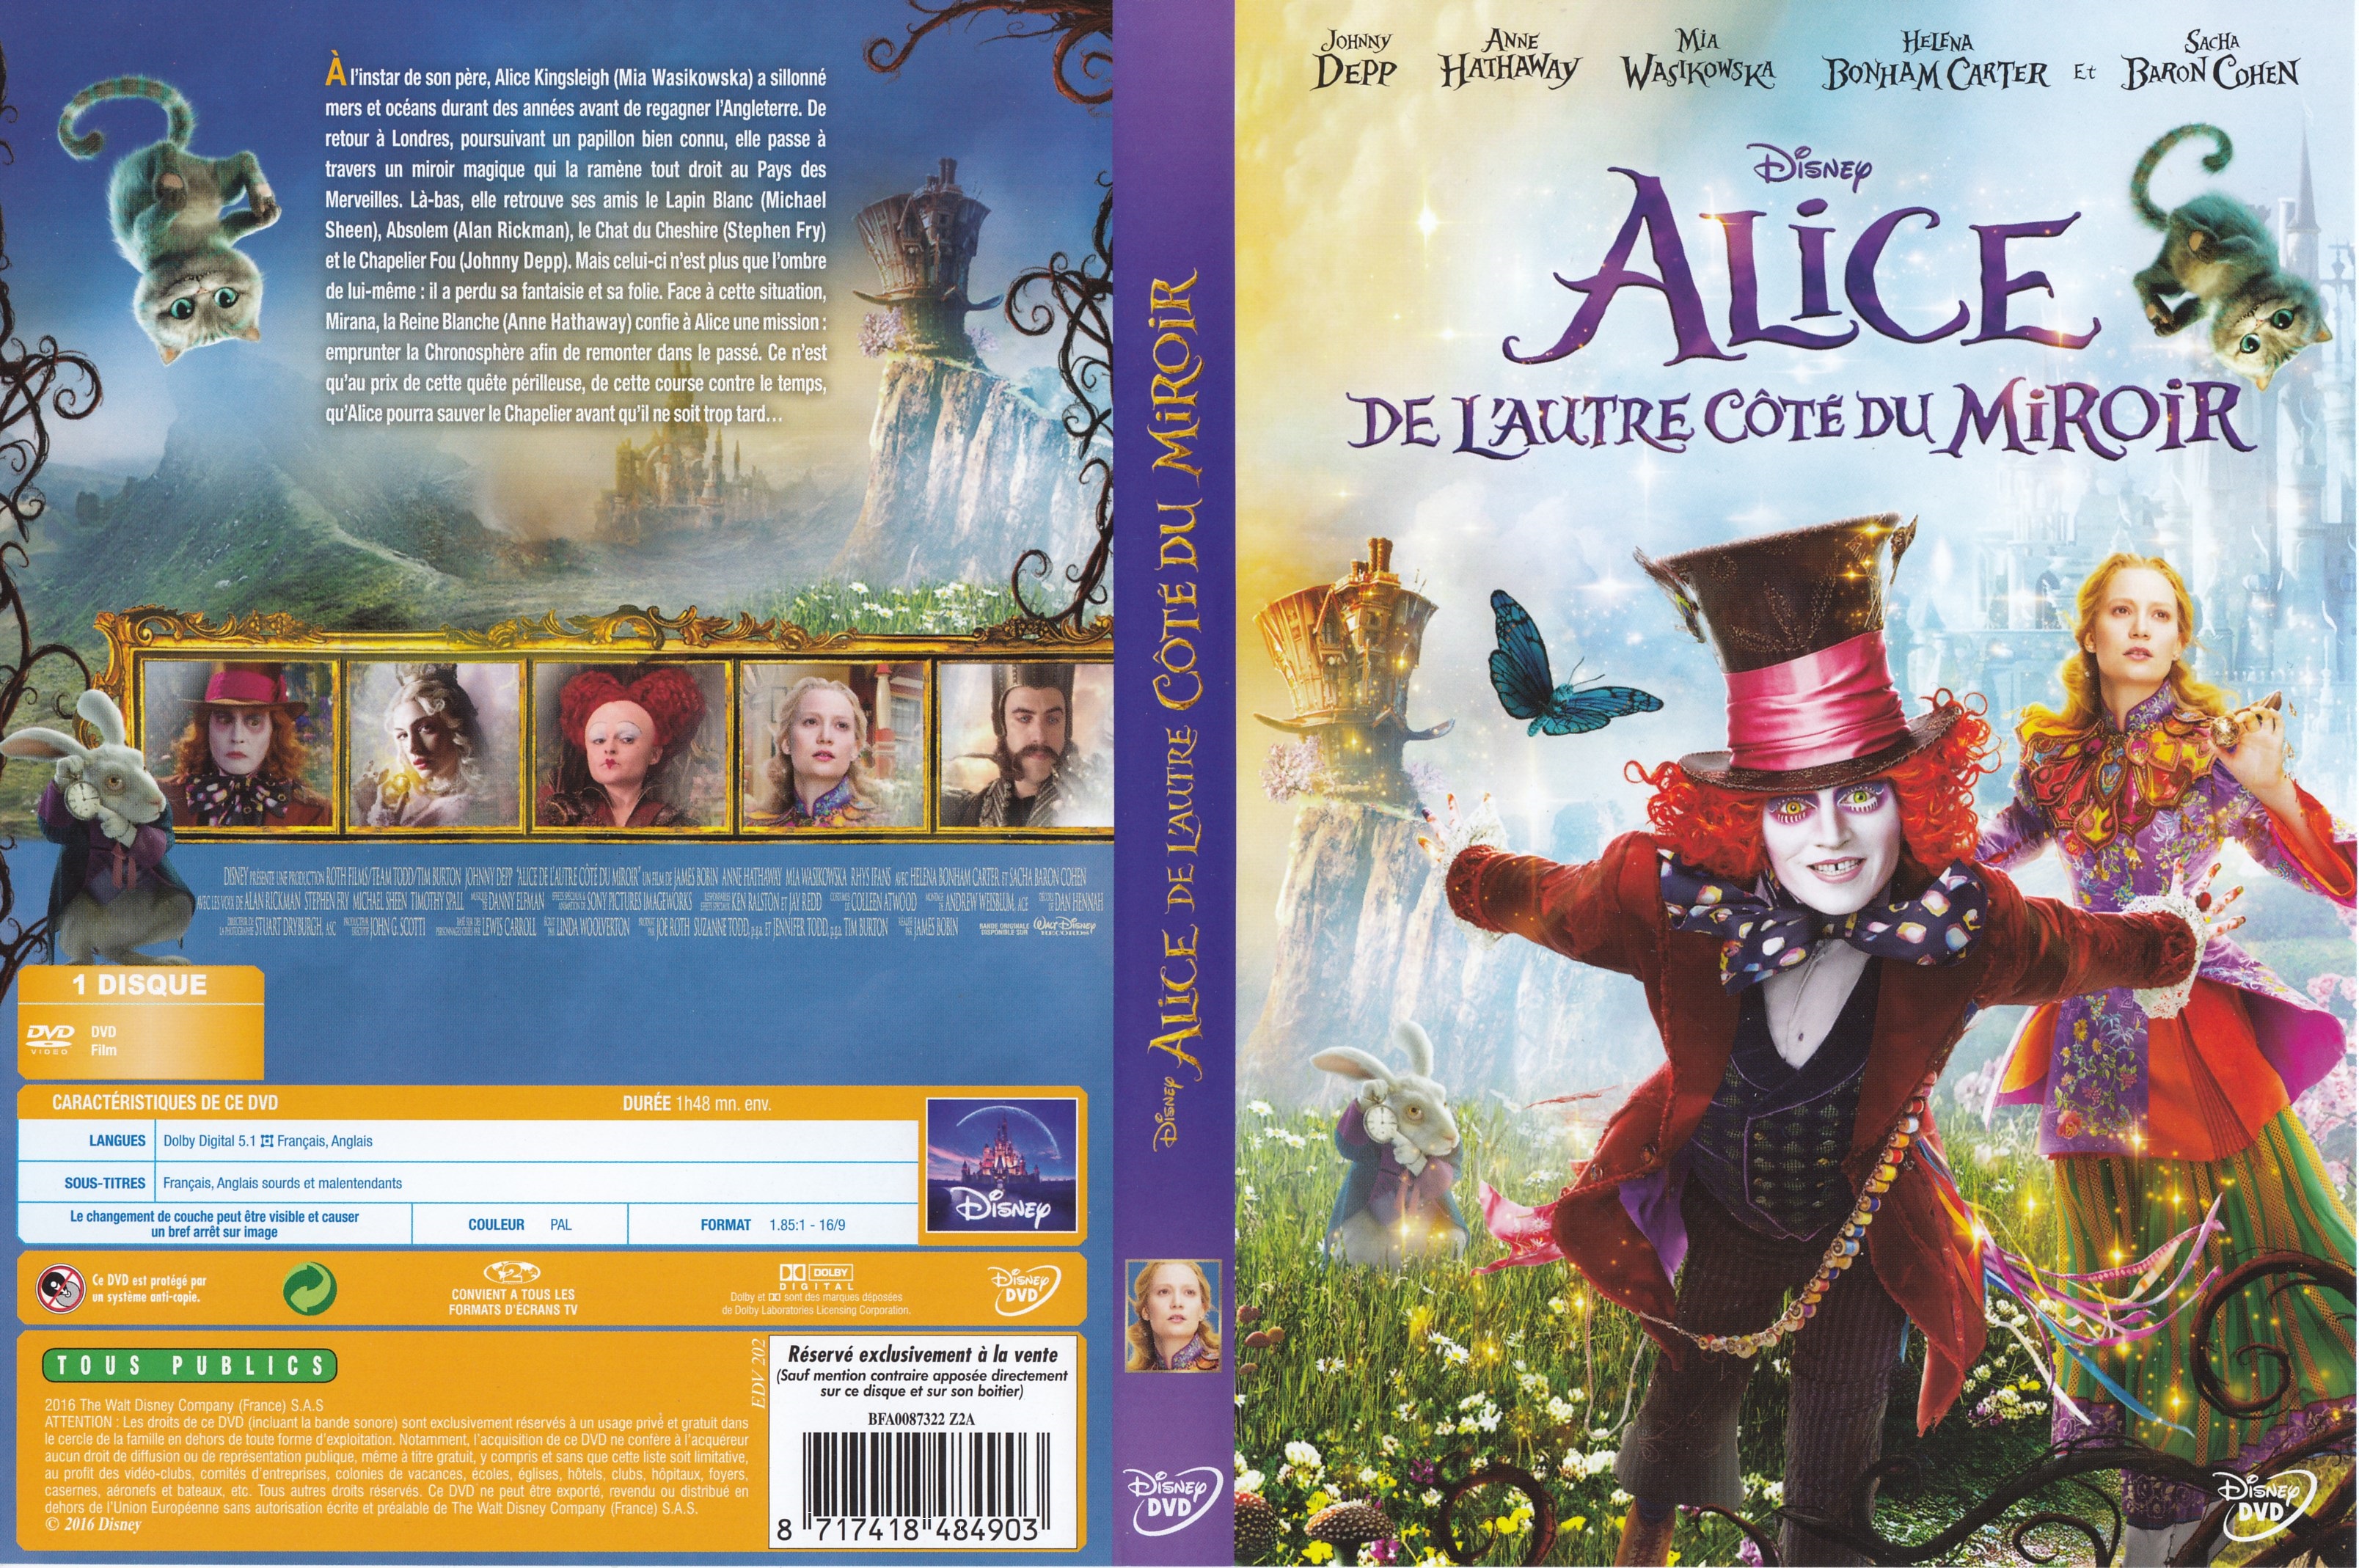 Jaquette DVD Alice de l